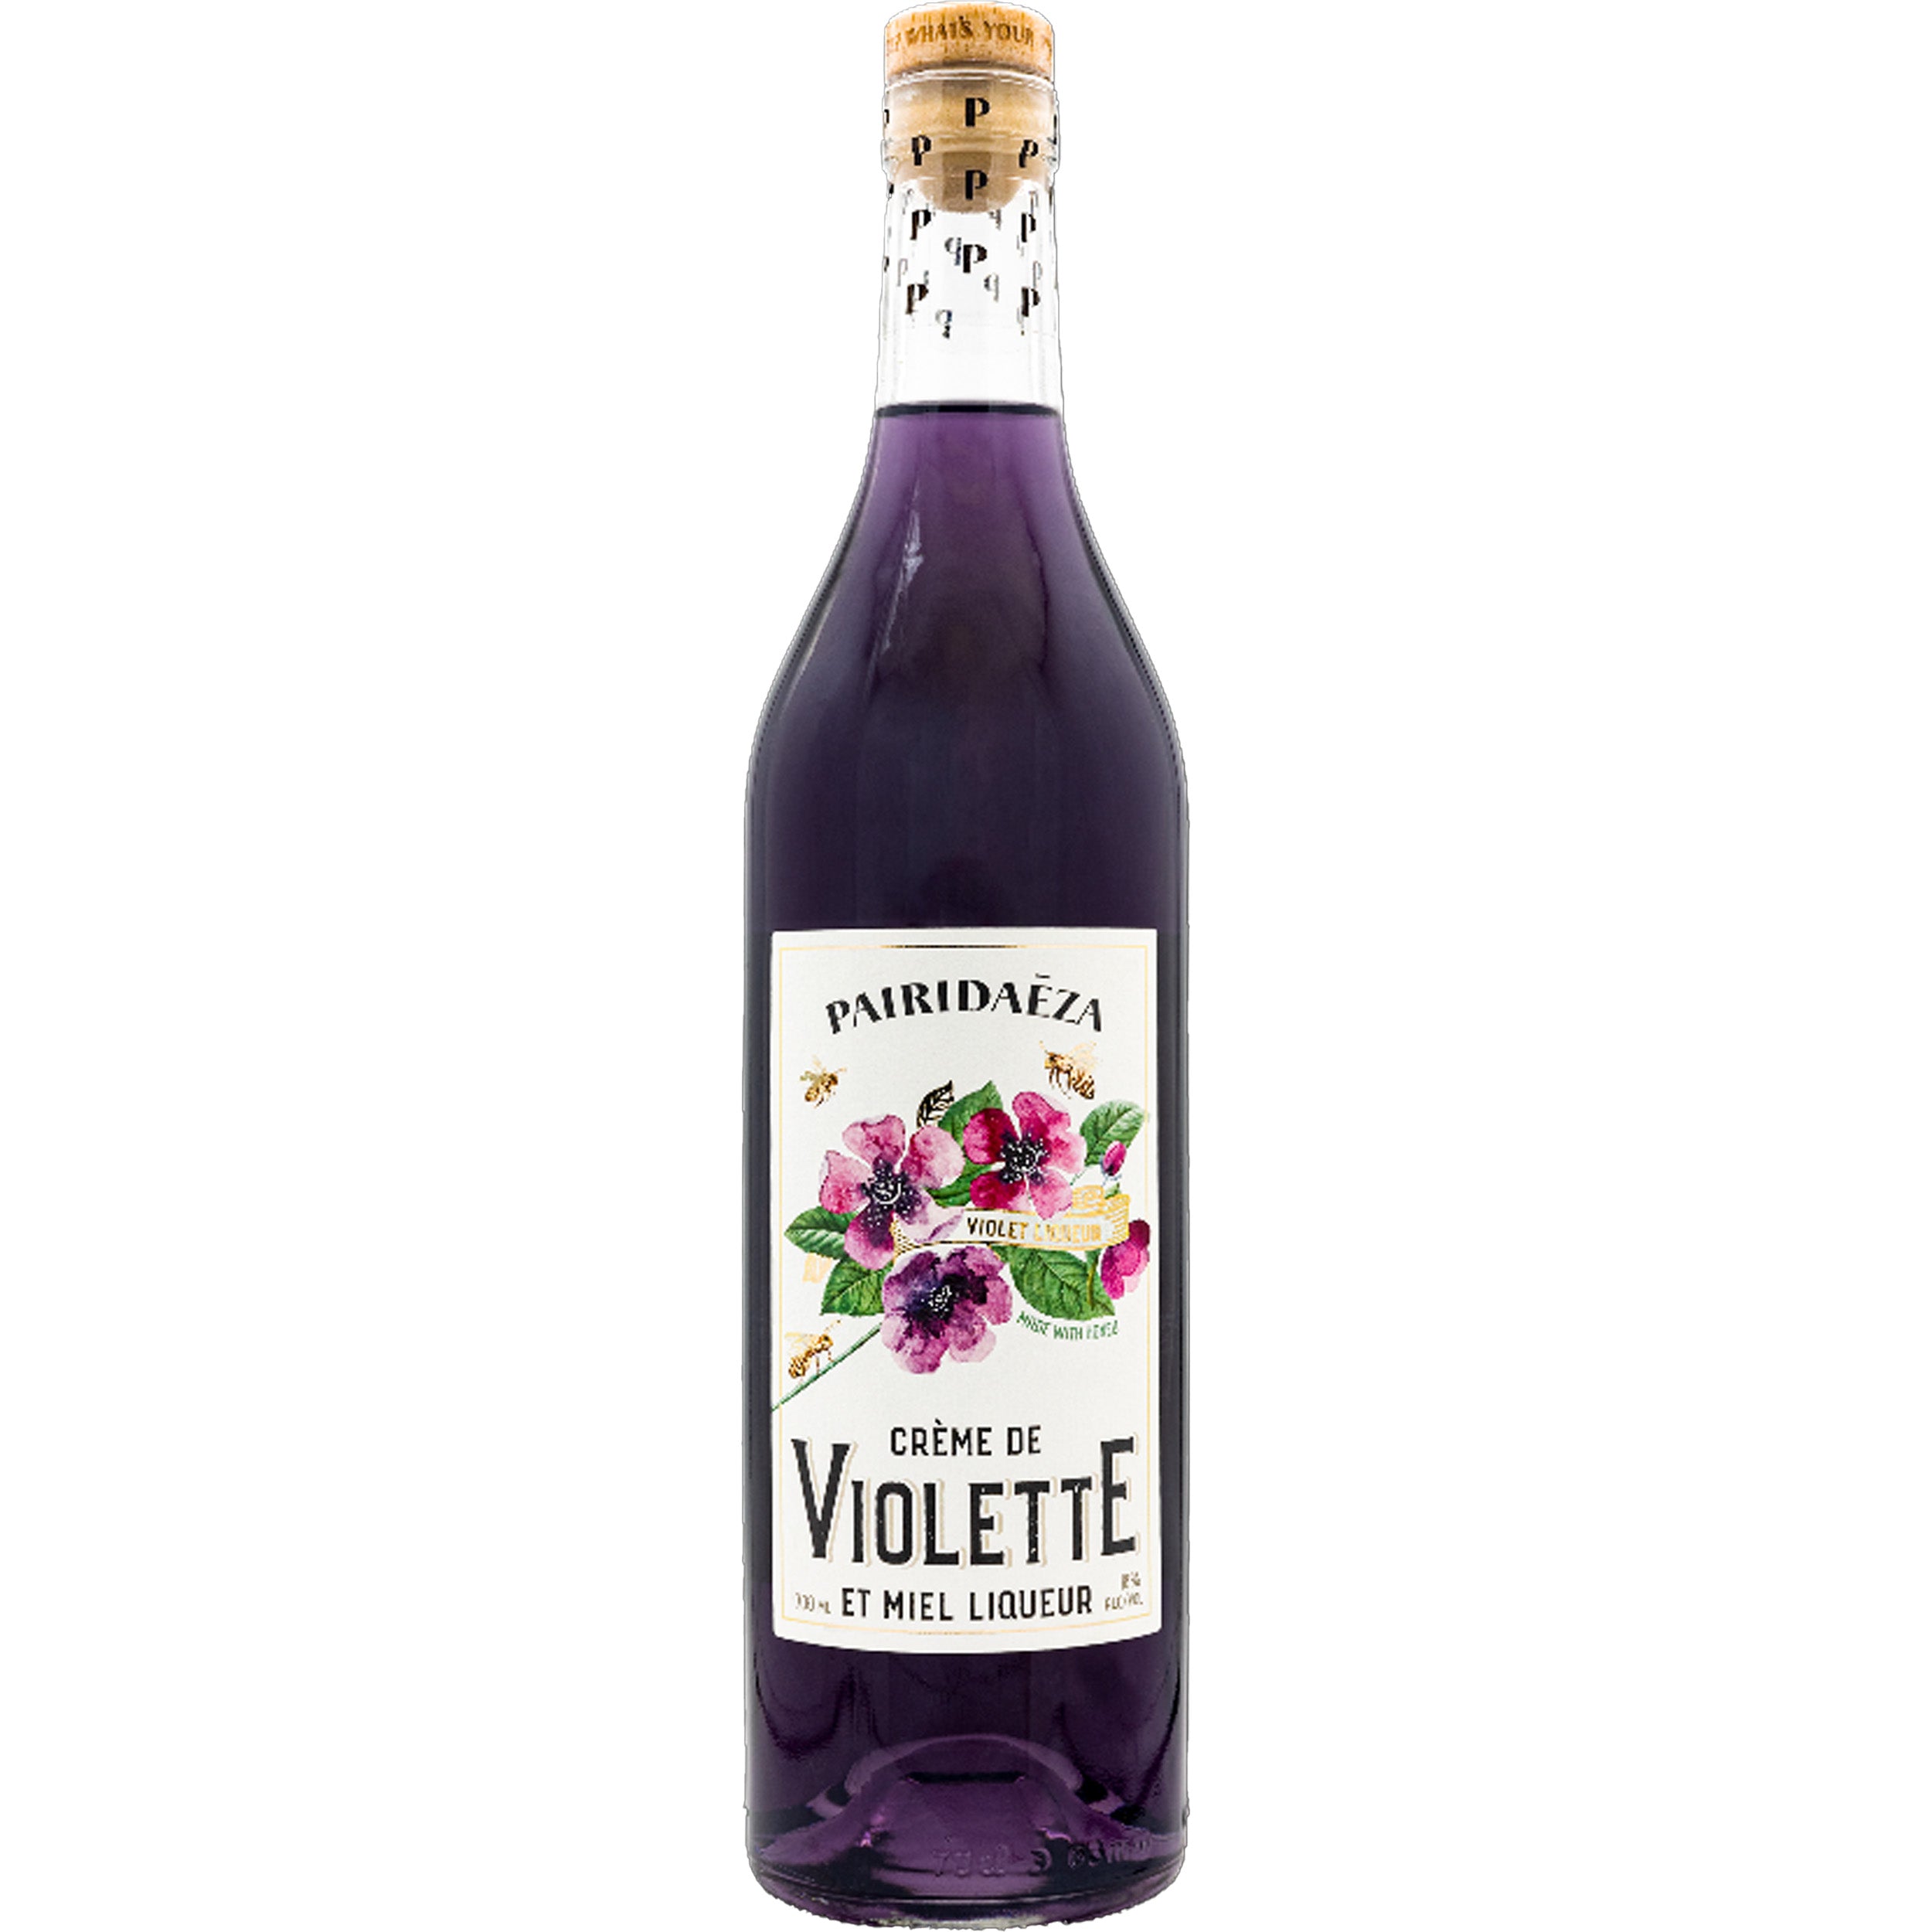 Pairidaeza Creme de Violette Liqueur